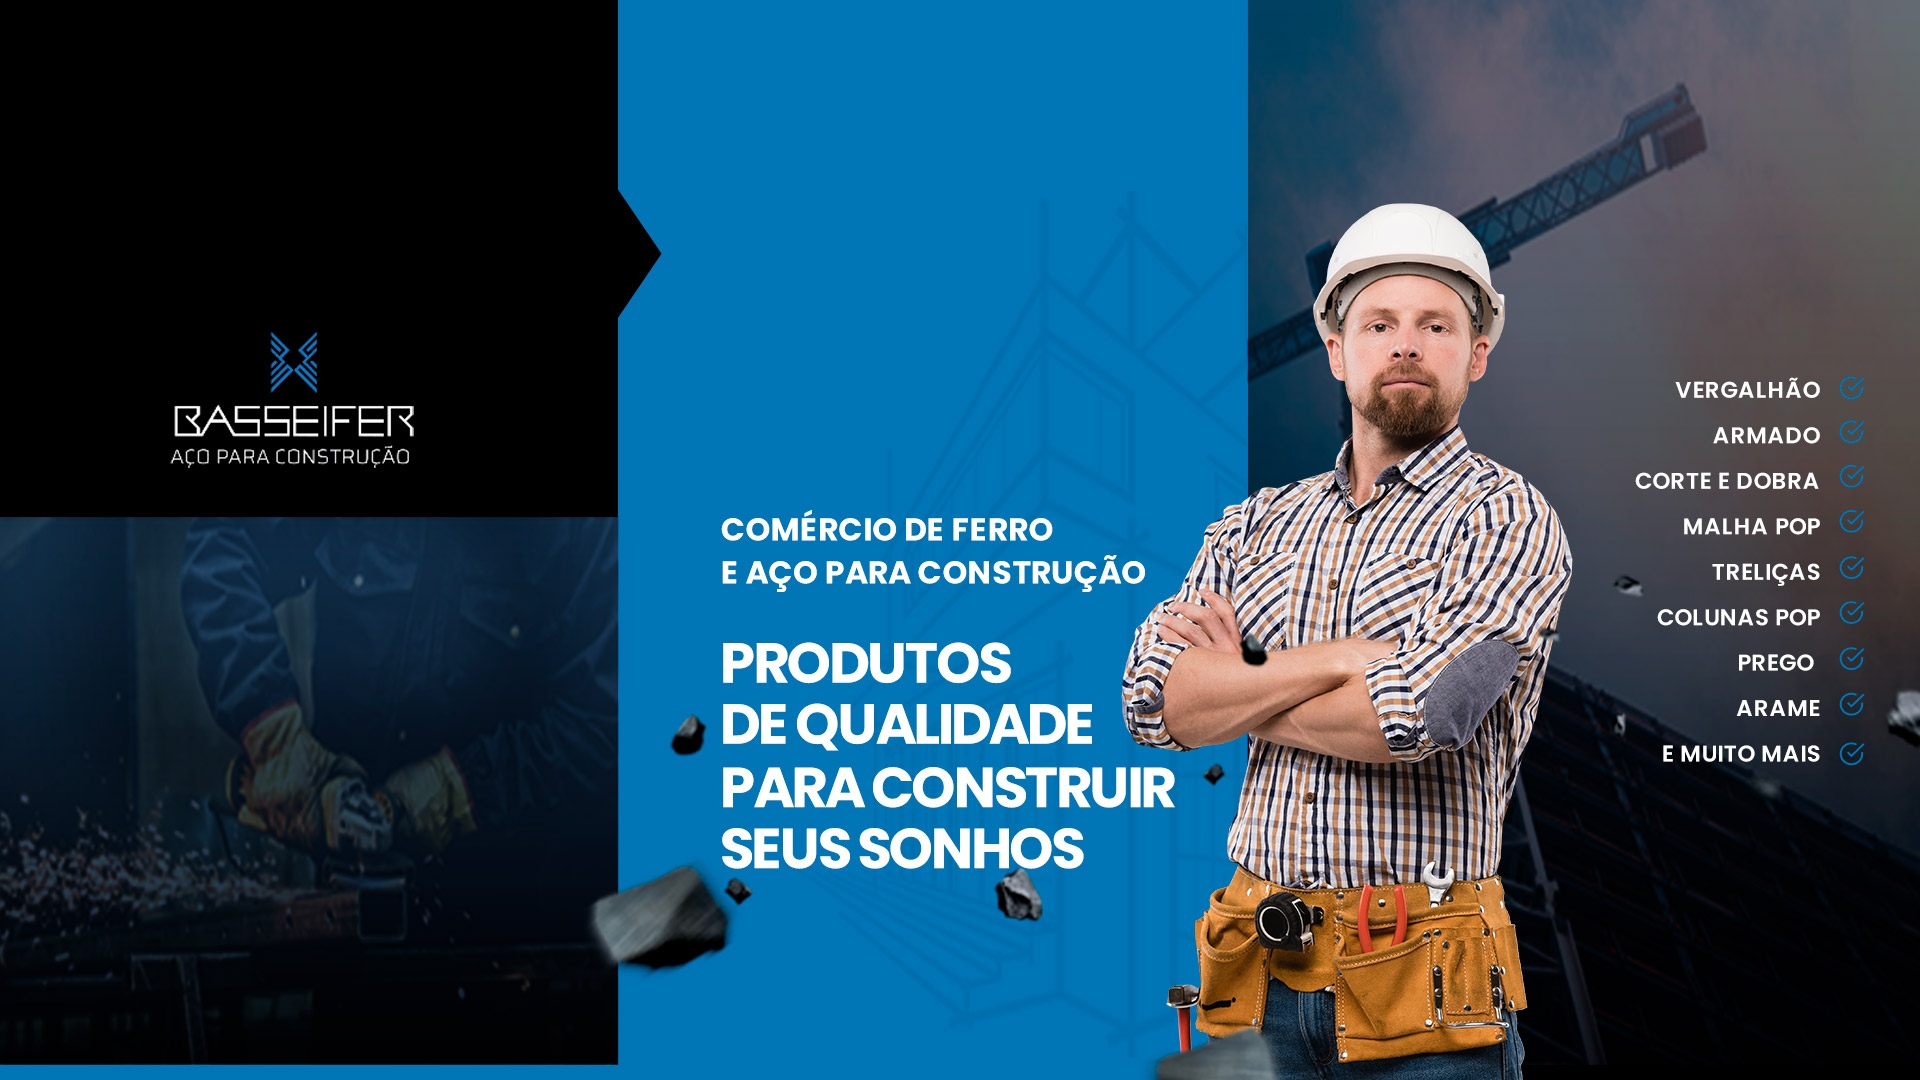 COMÉRCIO DE FERRO E AÇO PARA CONSTRUÇÃO Ferro para Construção Malha POP Sorocaba Tela para Concreto